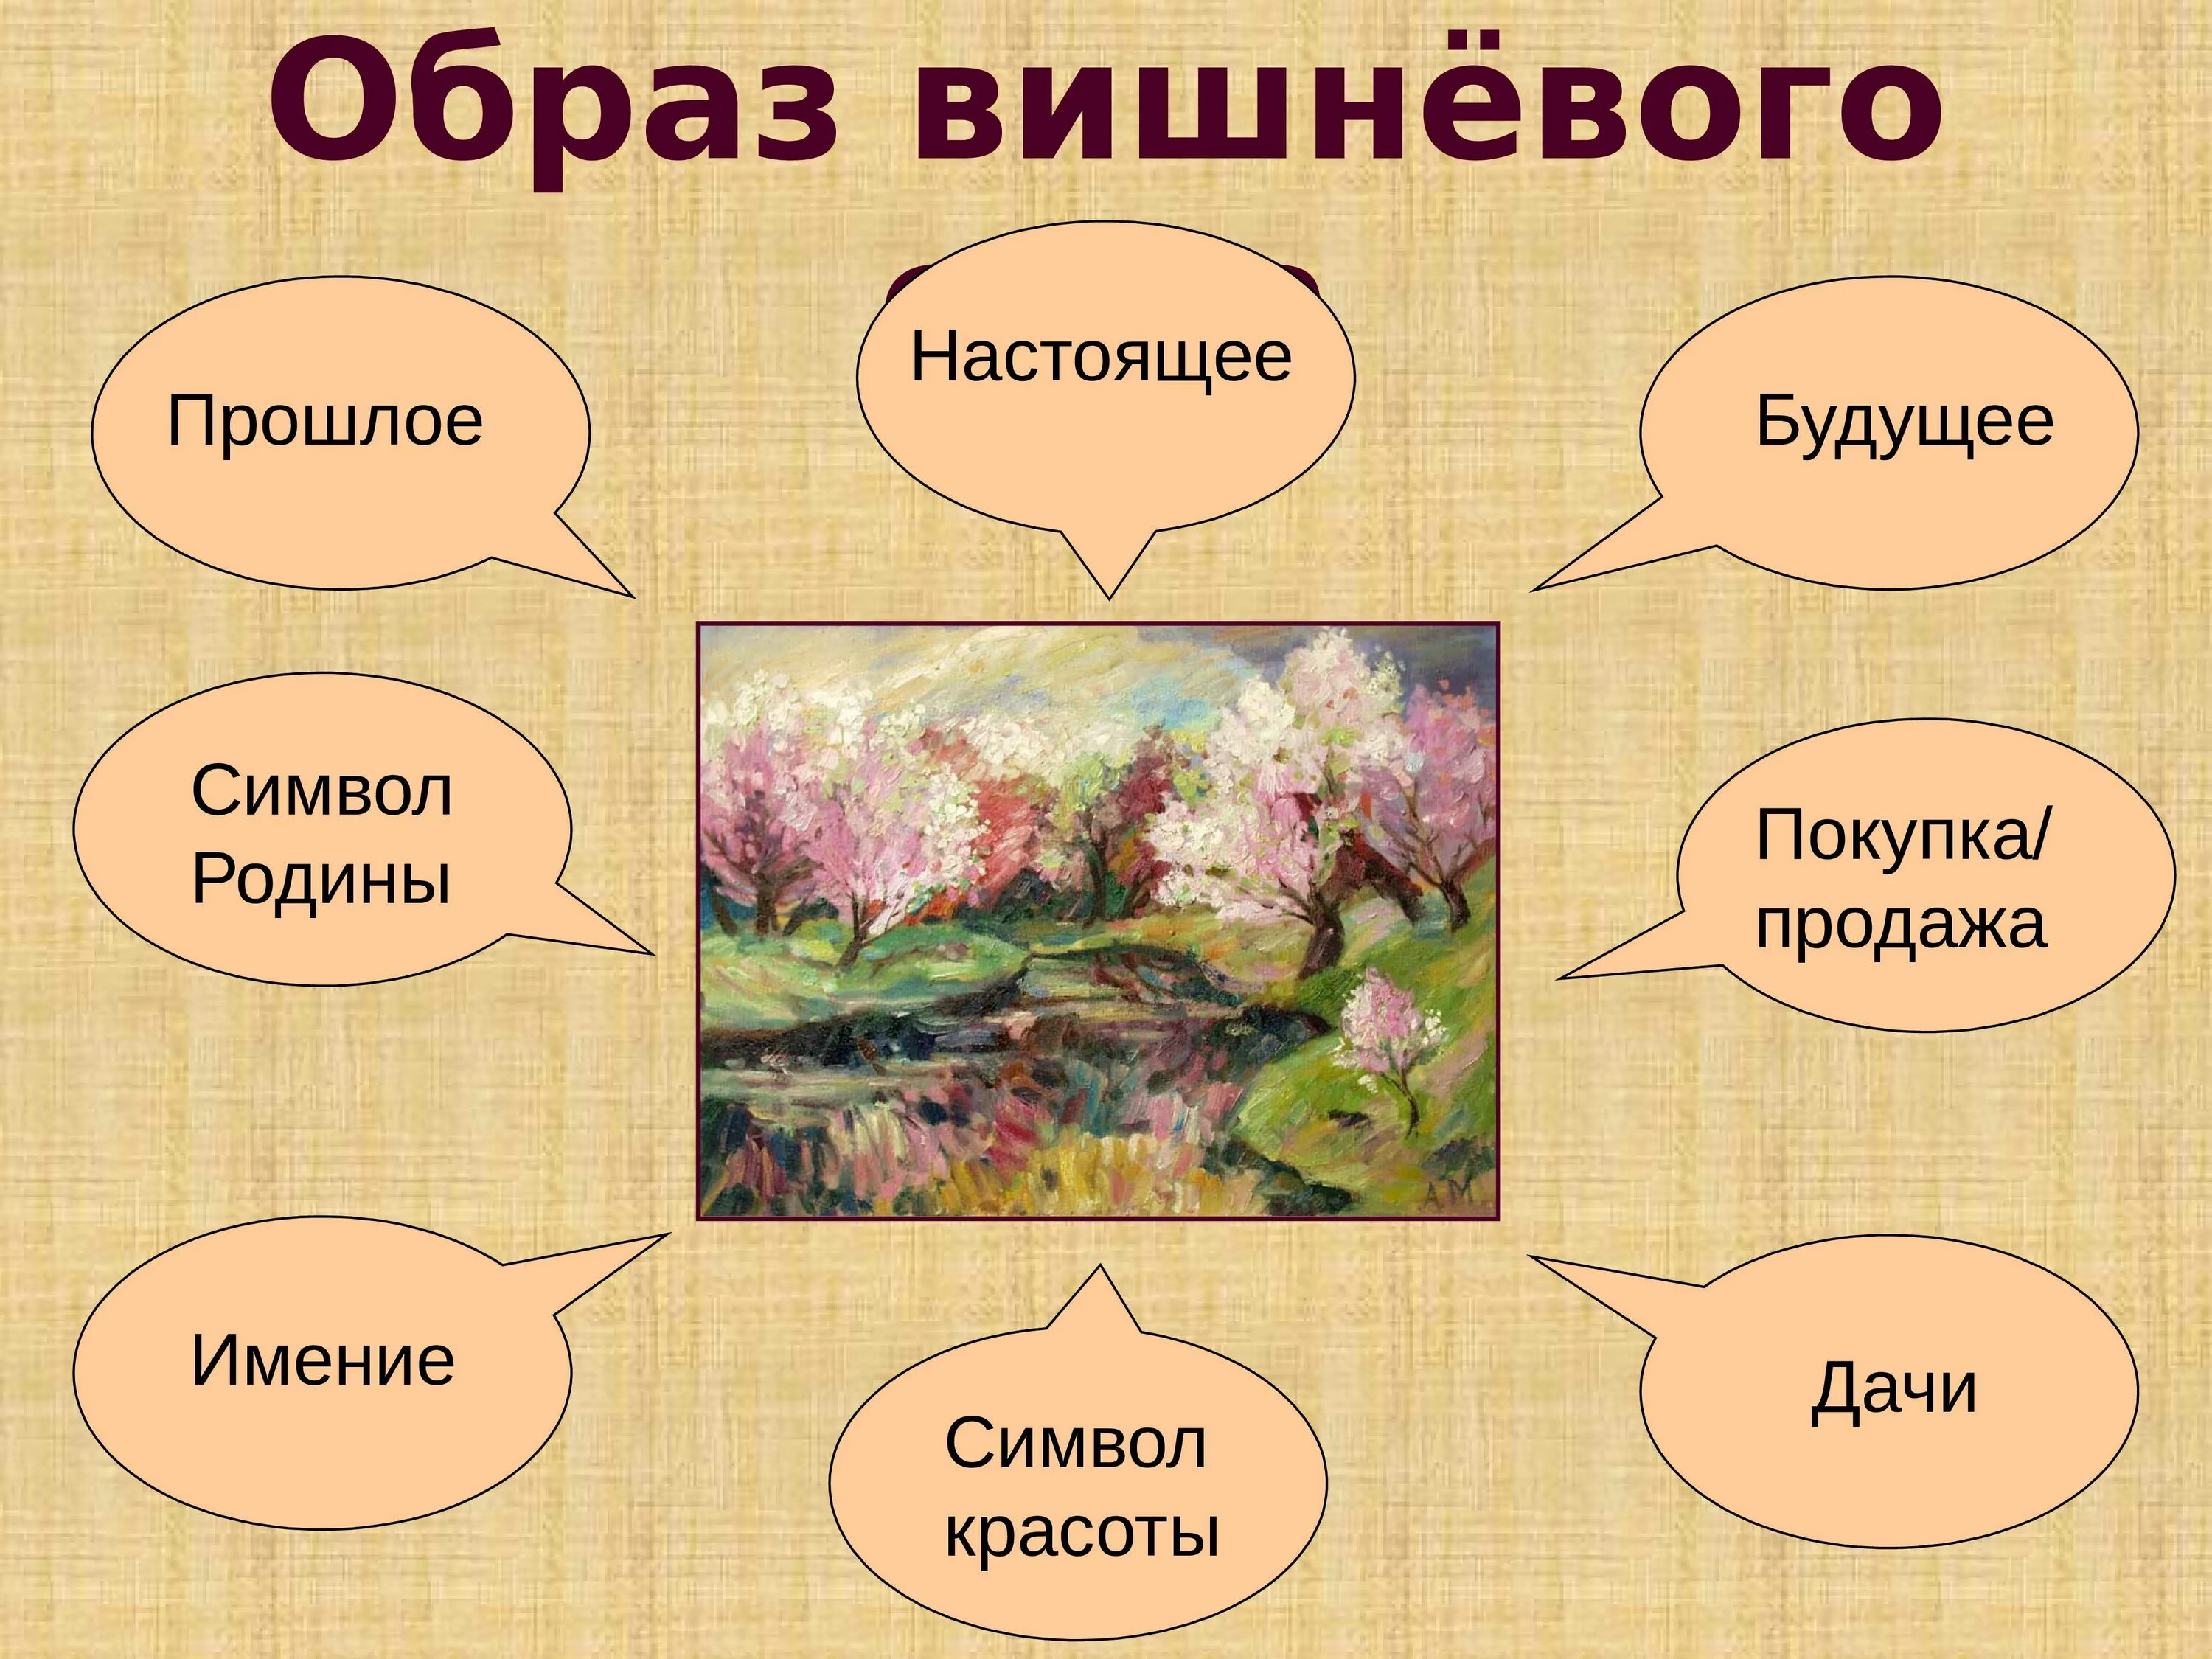 Вишневый сад символ россии. Вишневый СКД система образов. Образ вишневого сада. Вишневый сад презентация.